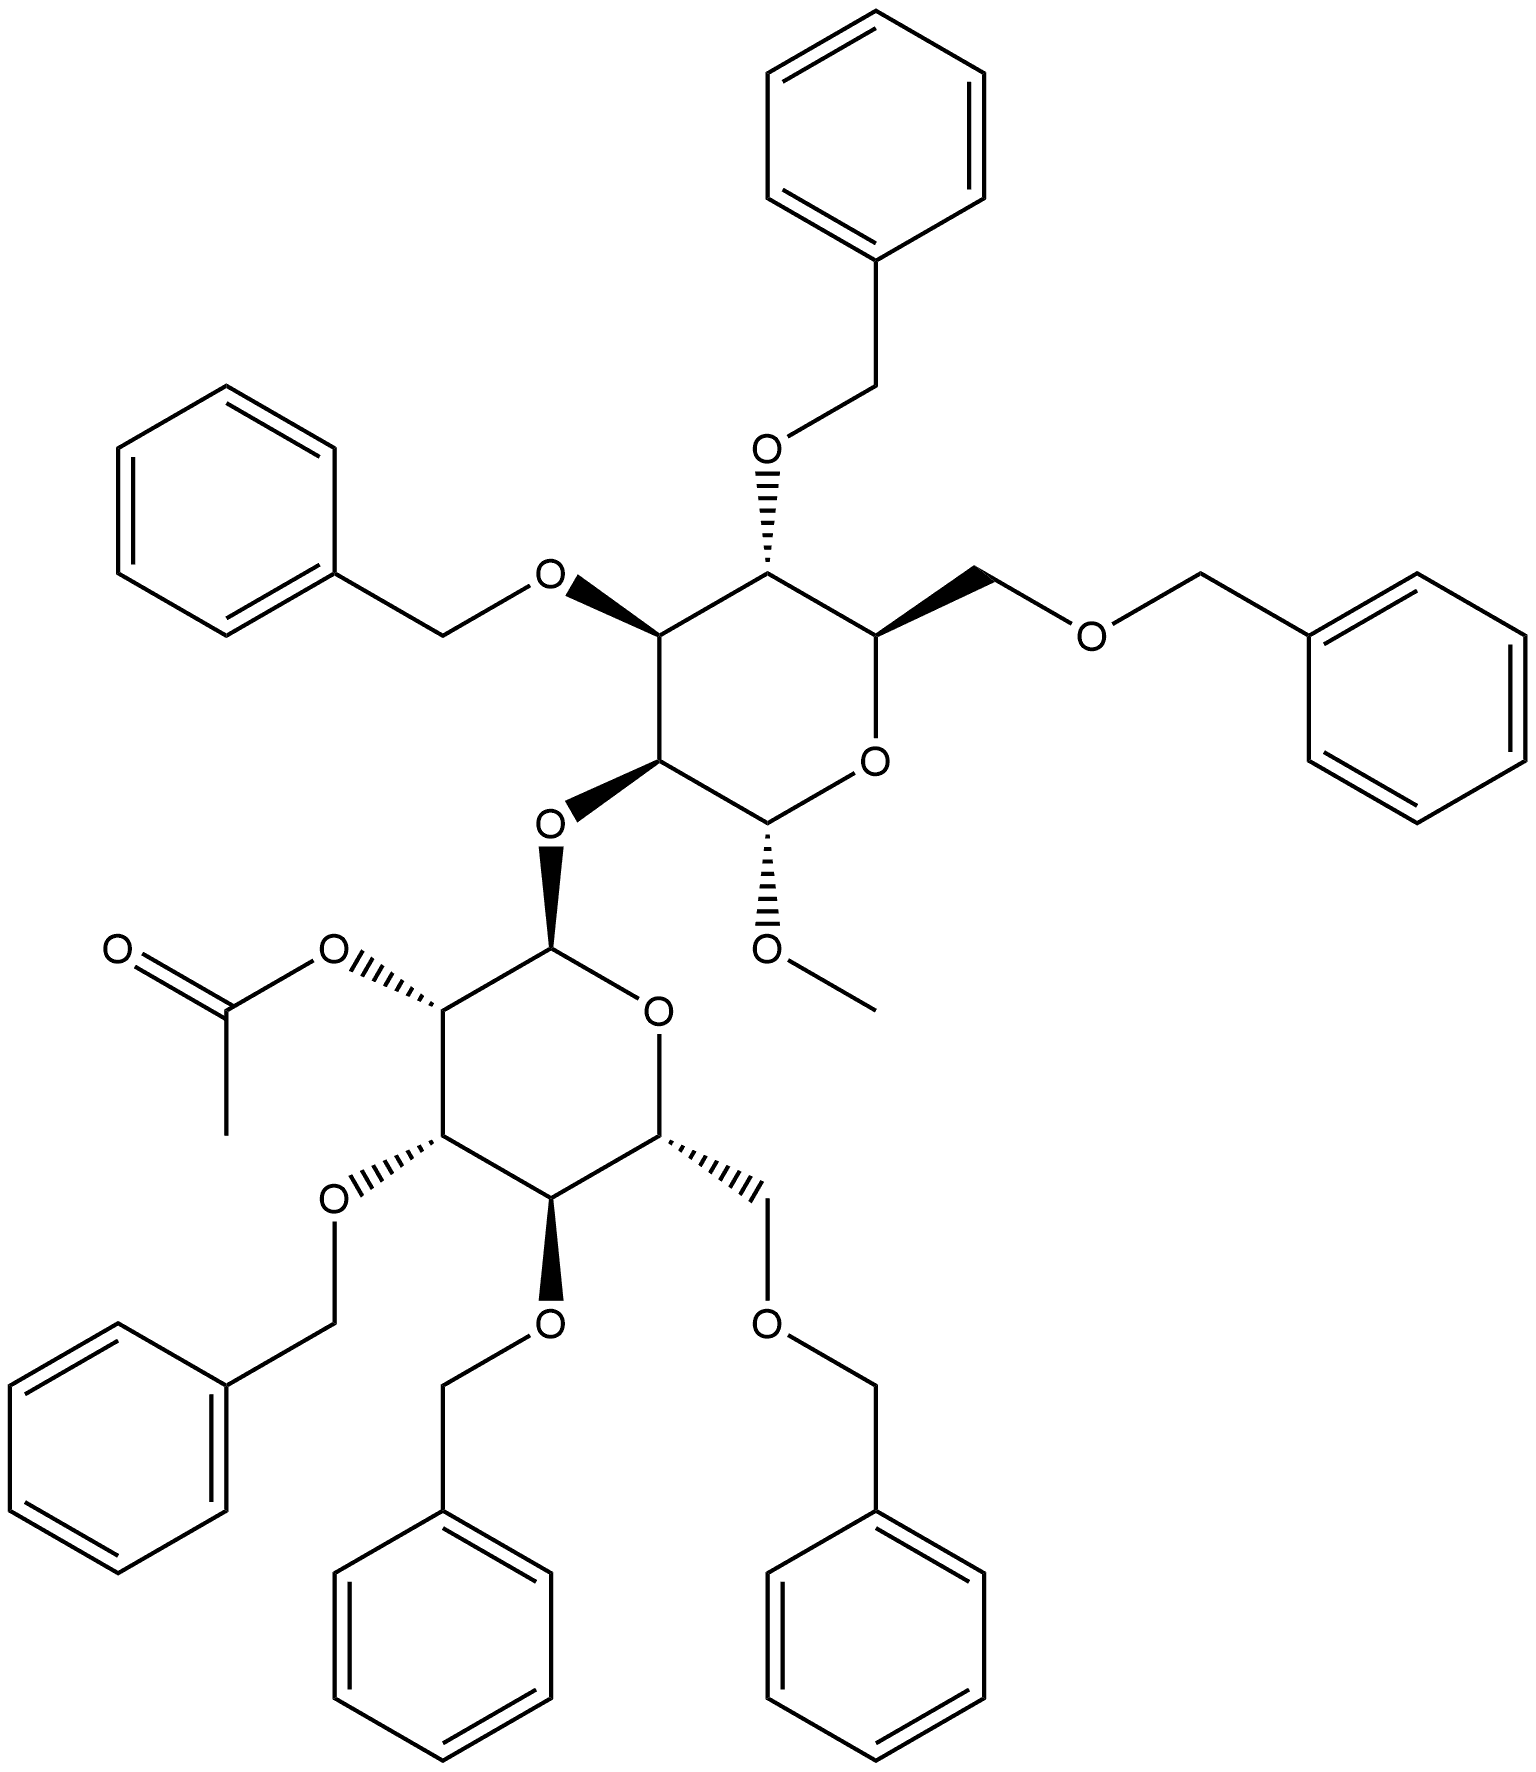 α-D-Mannopyranoside, methyl 2-O-[2-O-acetyl-3,4,6-tris-O-(phenylmethyl)-α-D-mannopyranosyl]-3,4,6-tris-O-(phenylmethyl)-